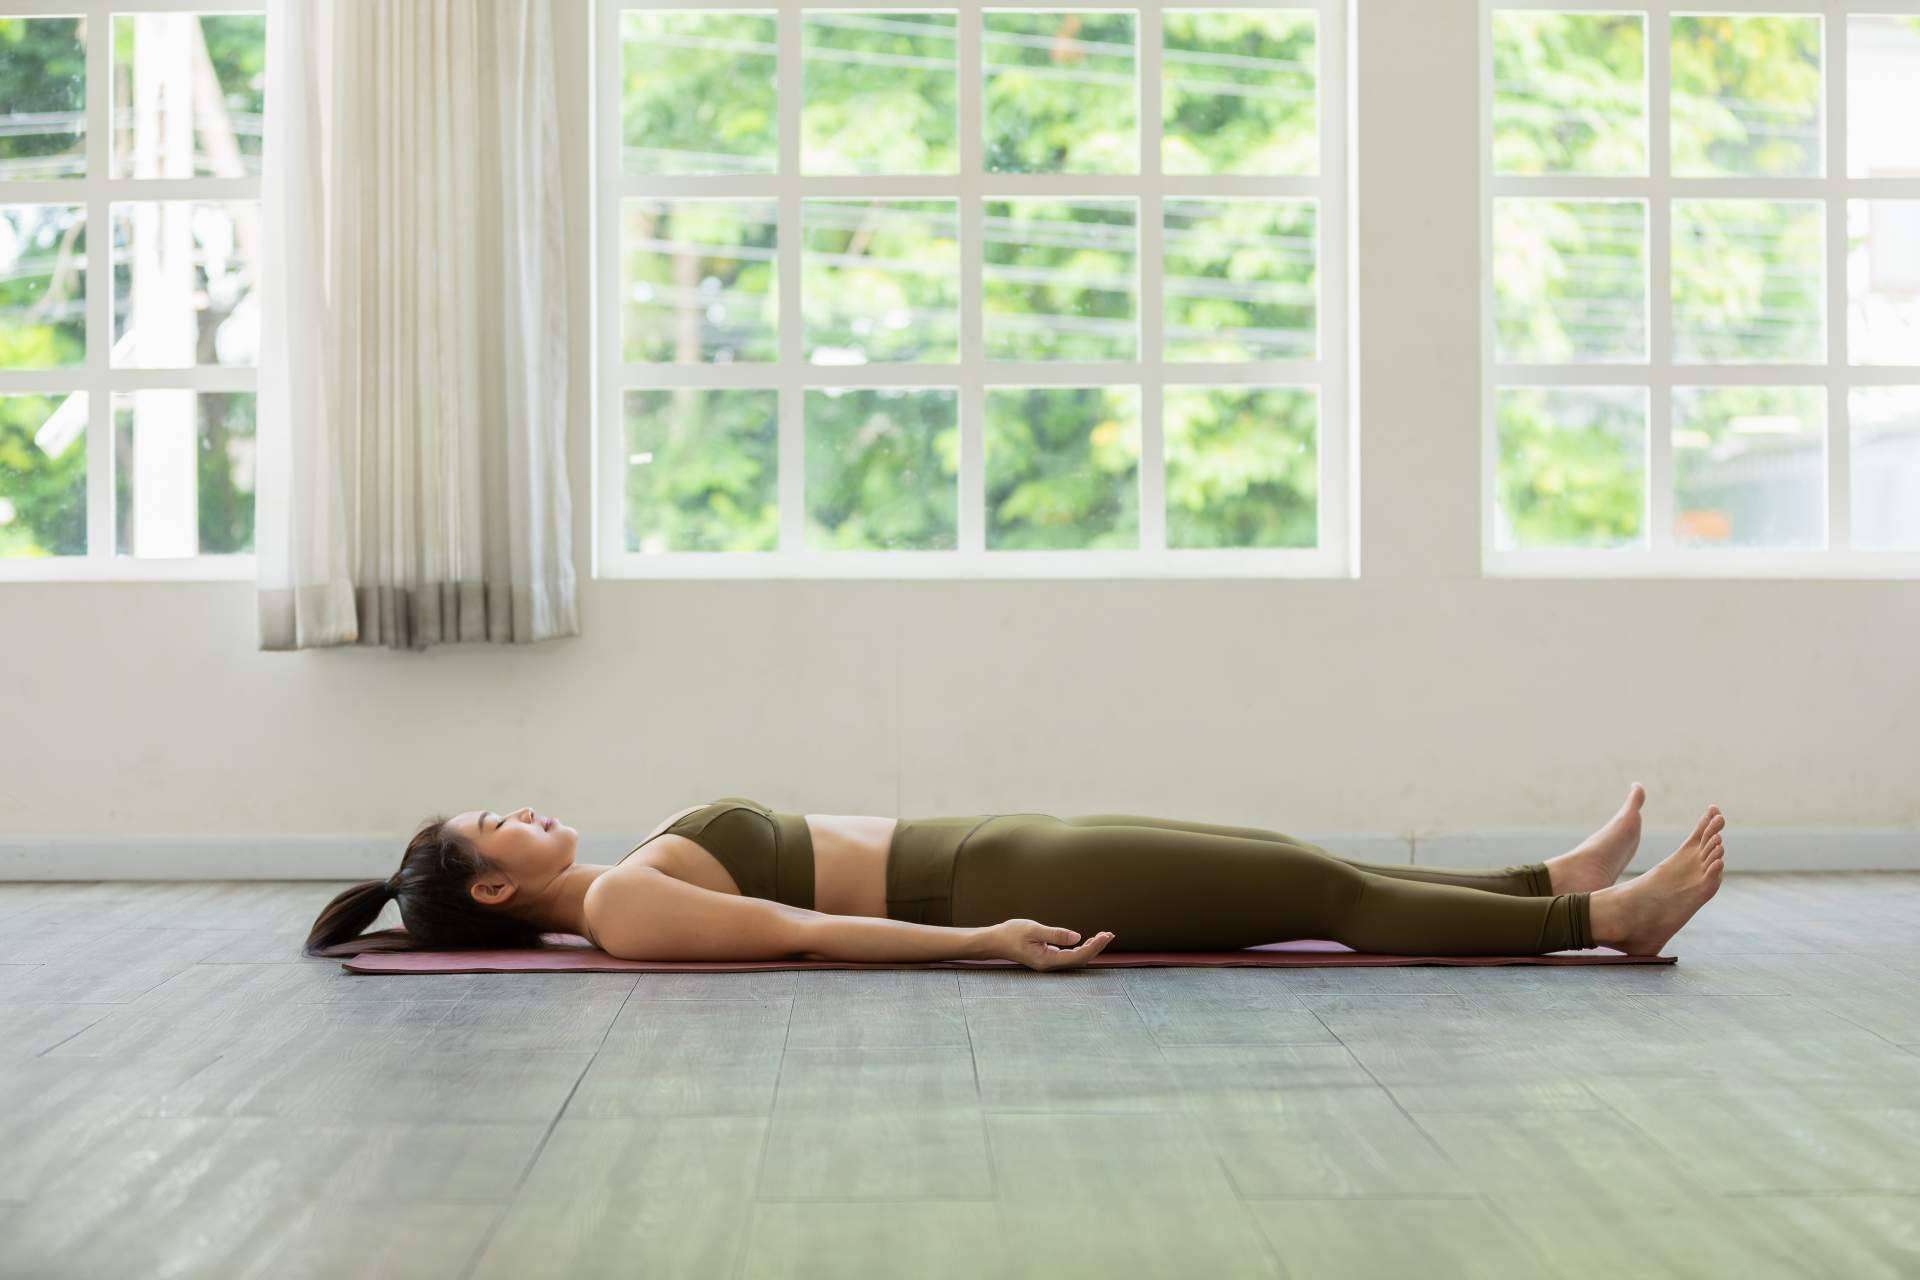 Si ja coneixes el ioga, aquesta modalitat t'aportarà un plus si ho necessites